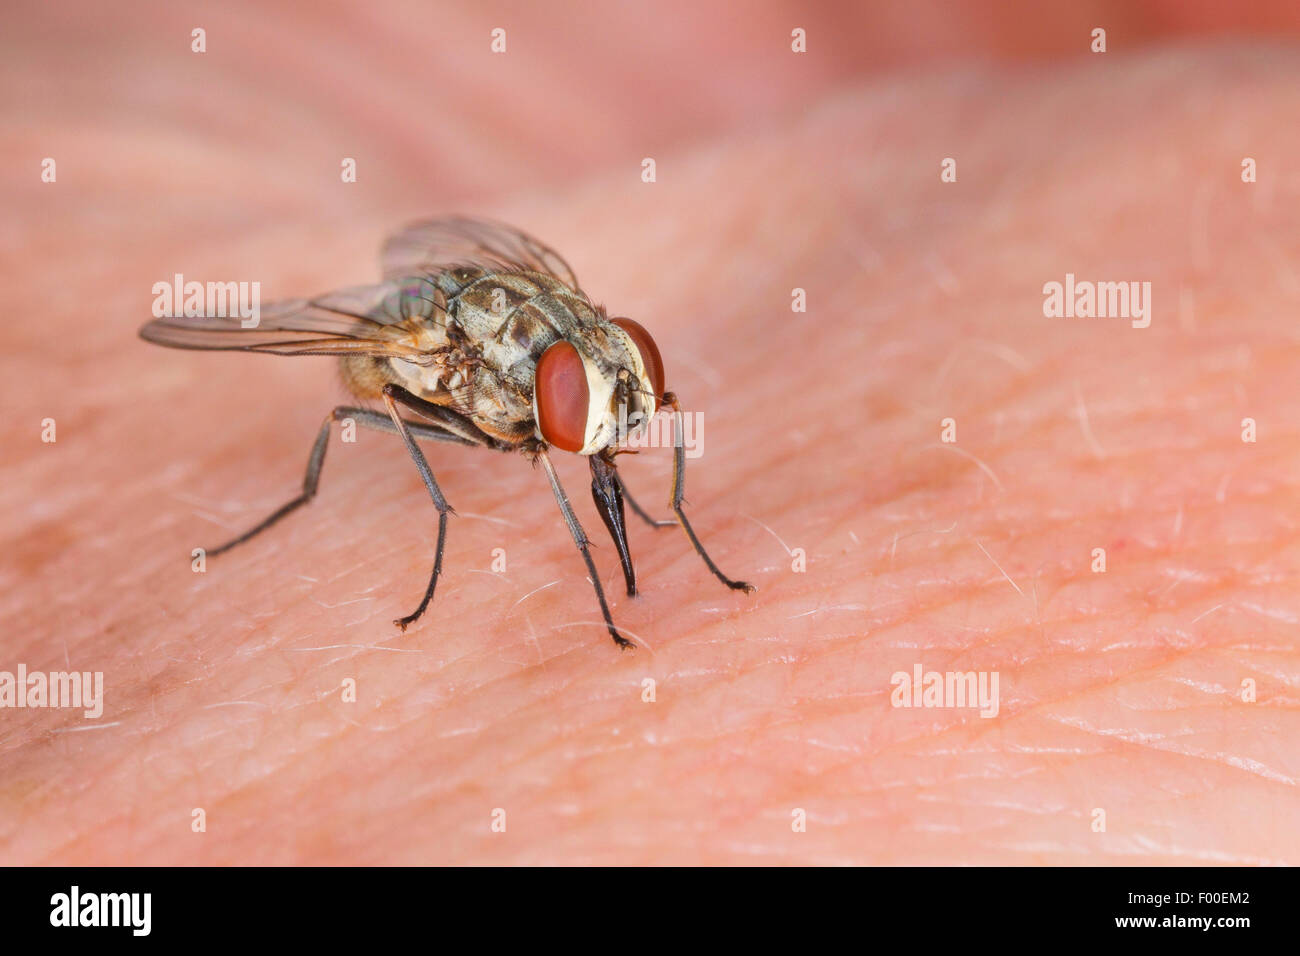 Mosca de los establos, perro volar, picadura de mosca común (Stomoxys calcitrans), en la piel humana. Foto de stock